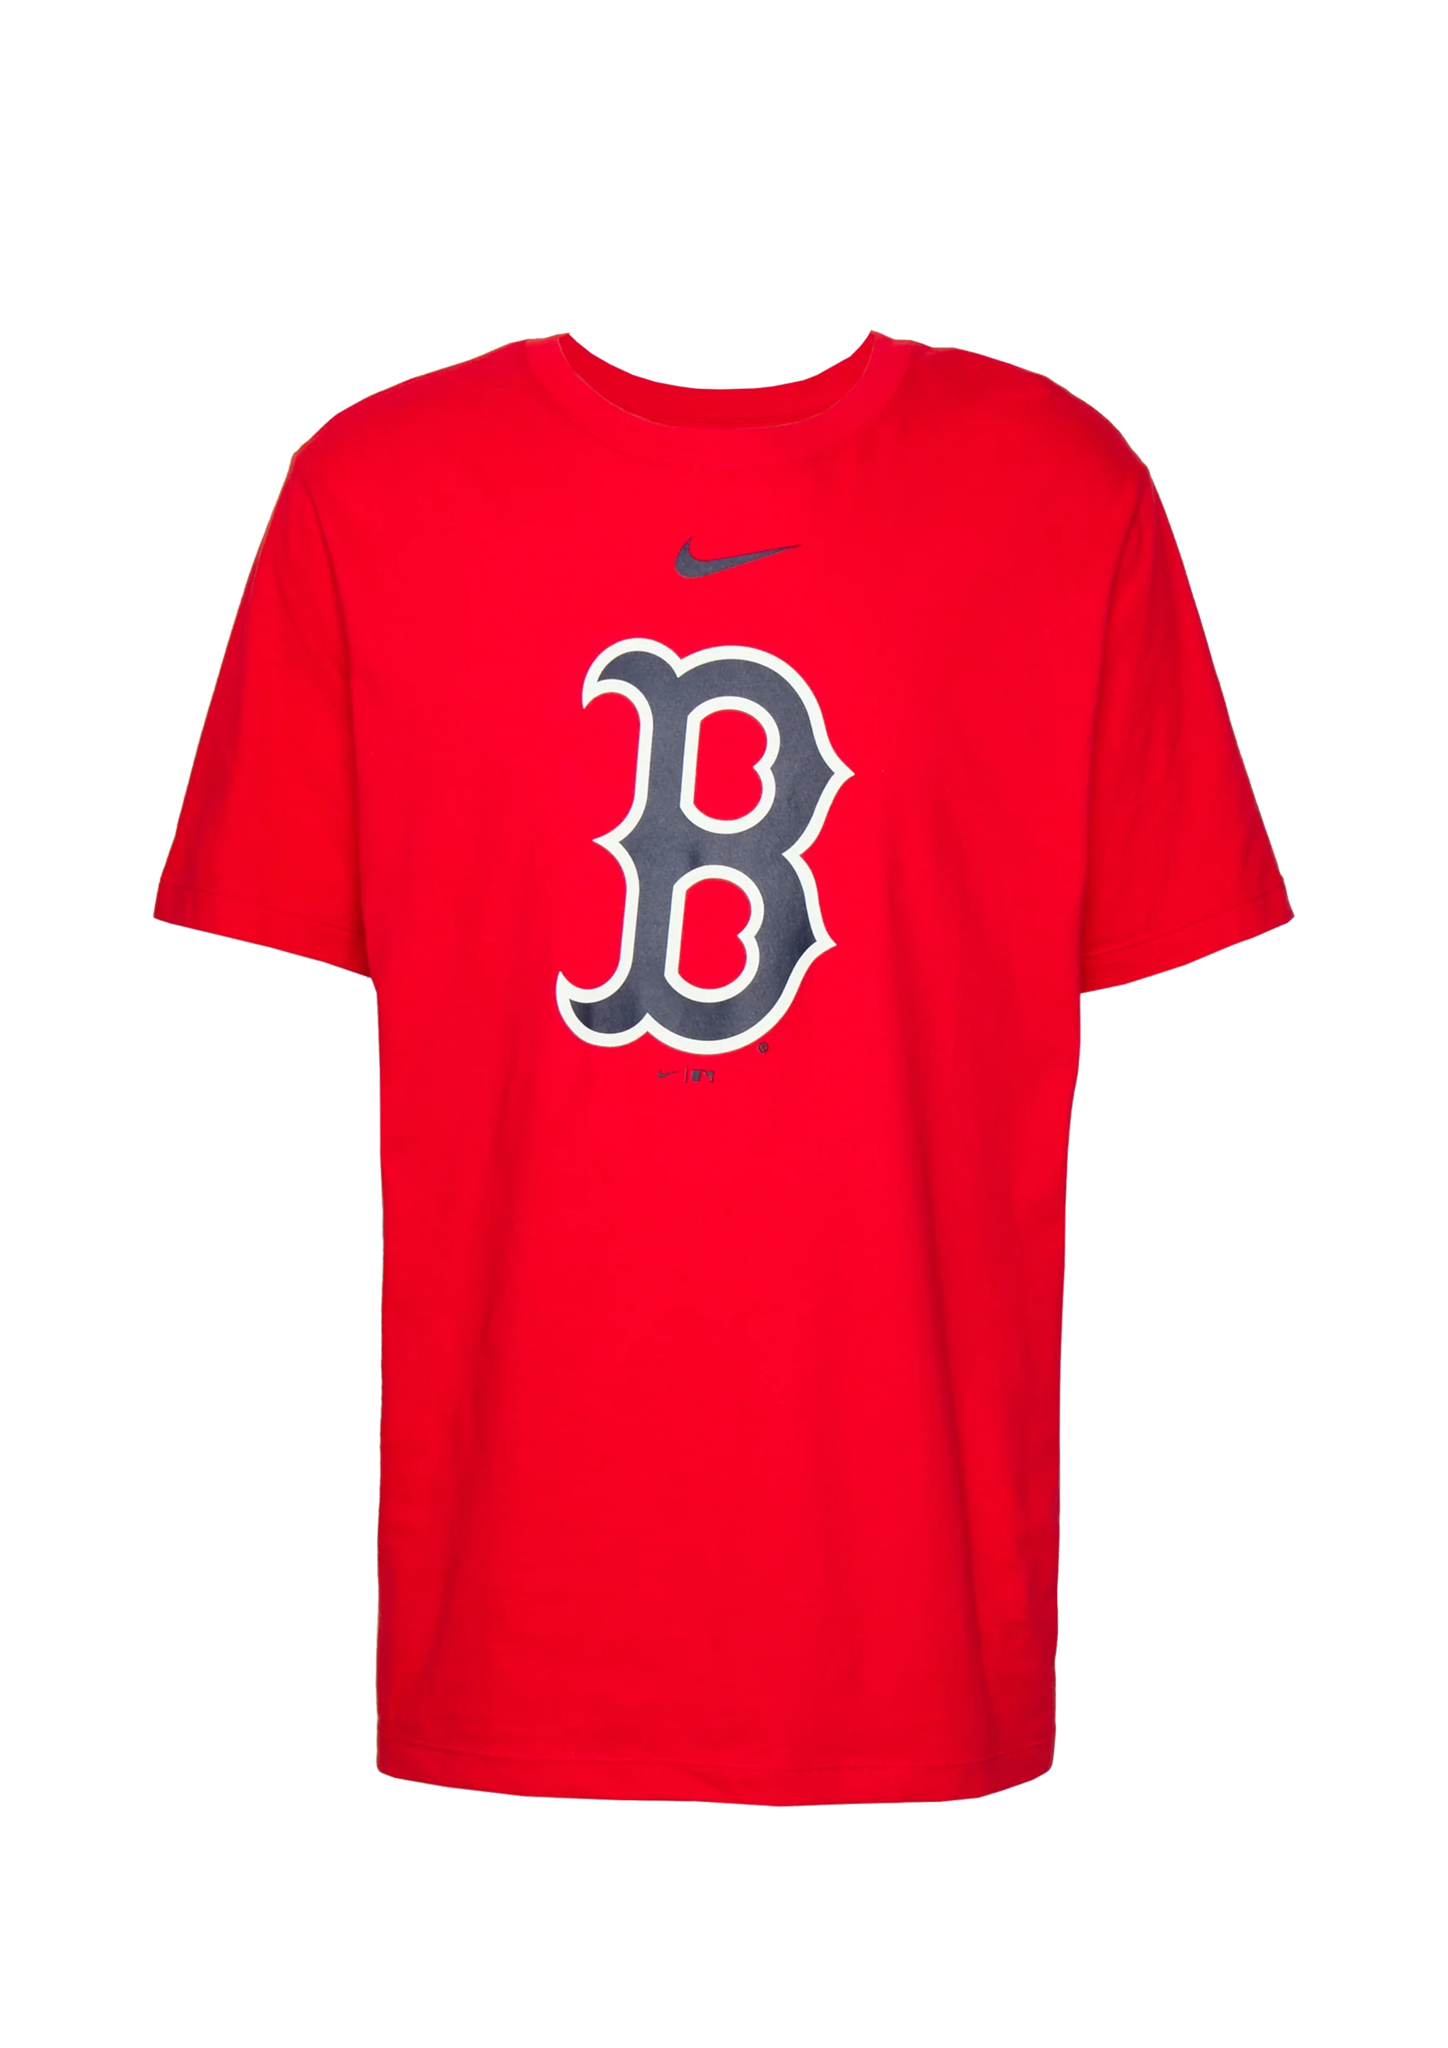 NIKE Fan Gear Boston Red Sox Nike Replica Fashion Jersey (Black